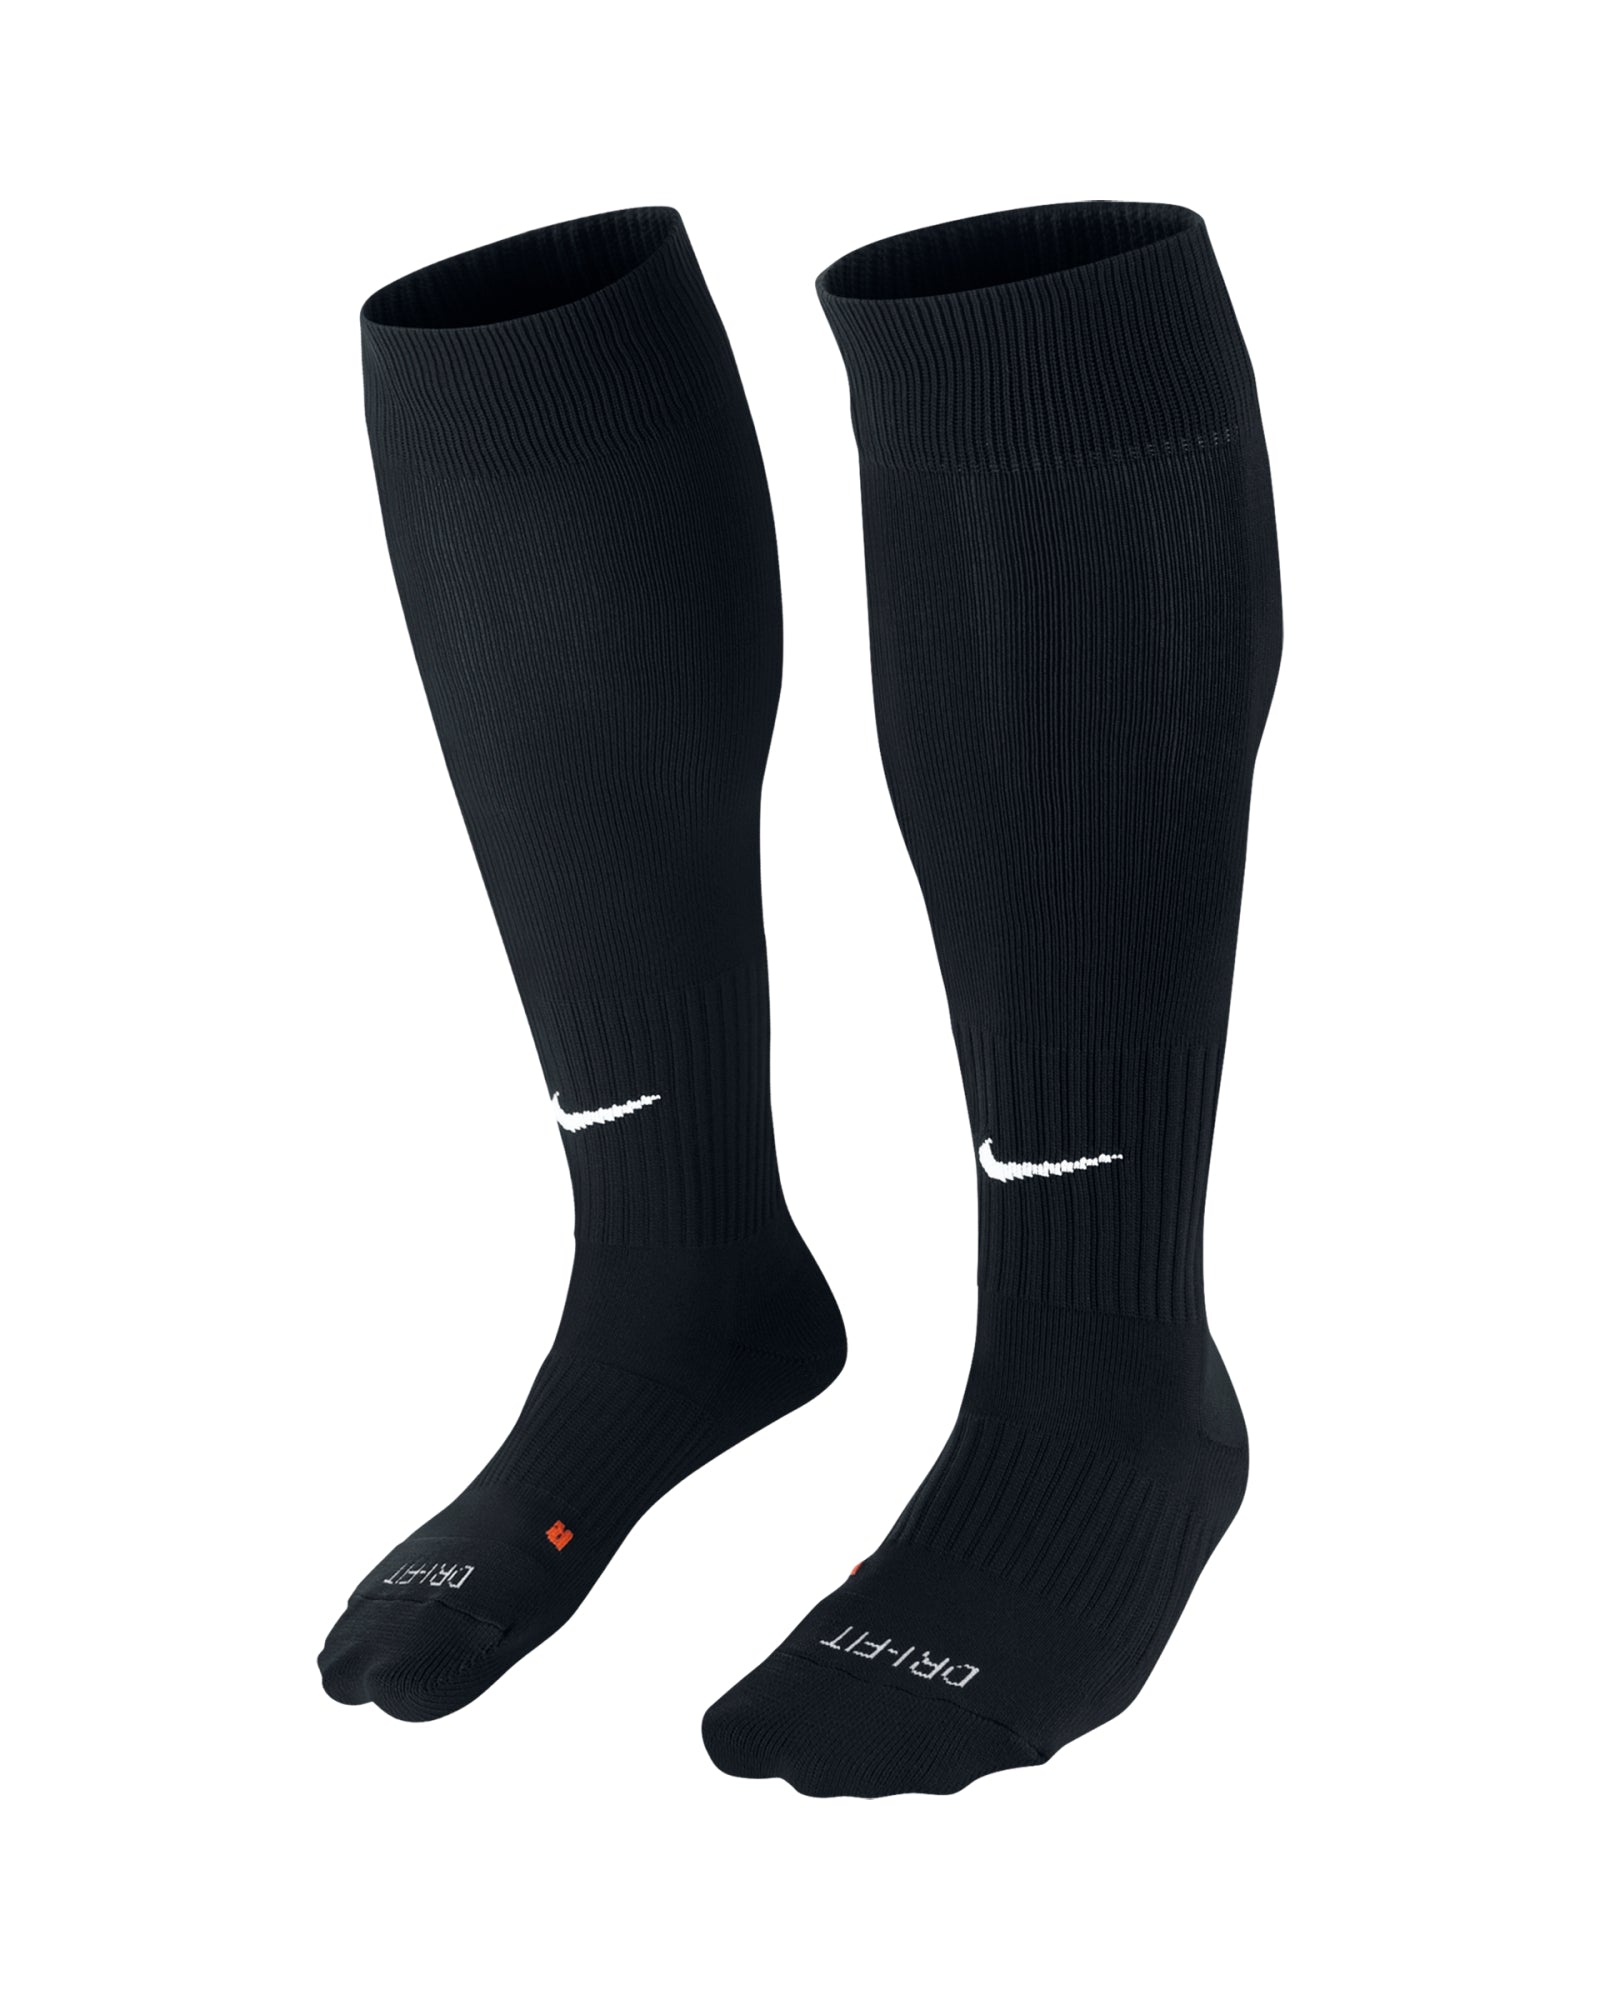 BRS - Nike Classic II Sock - Black